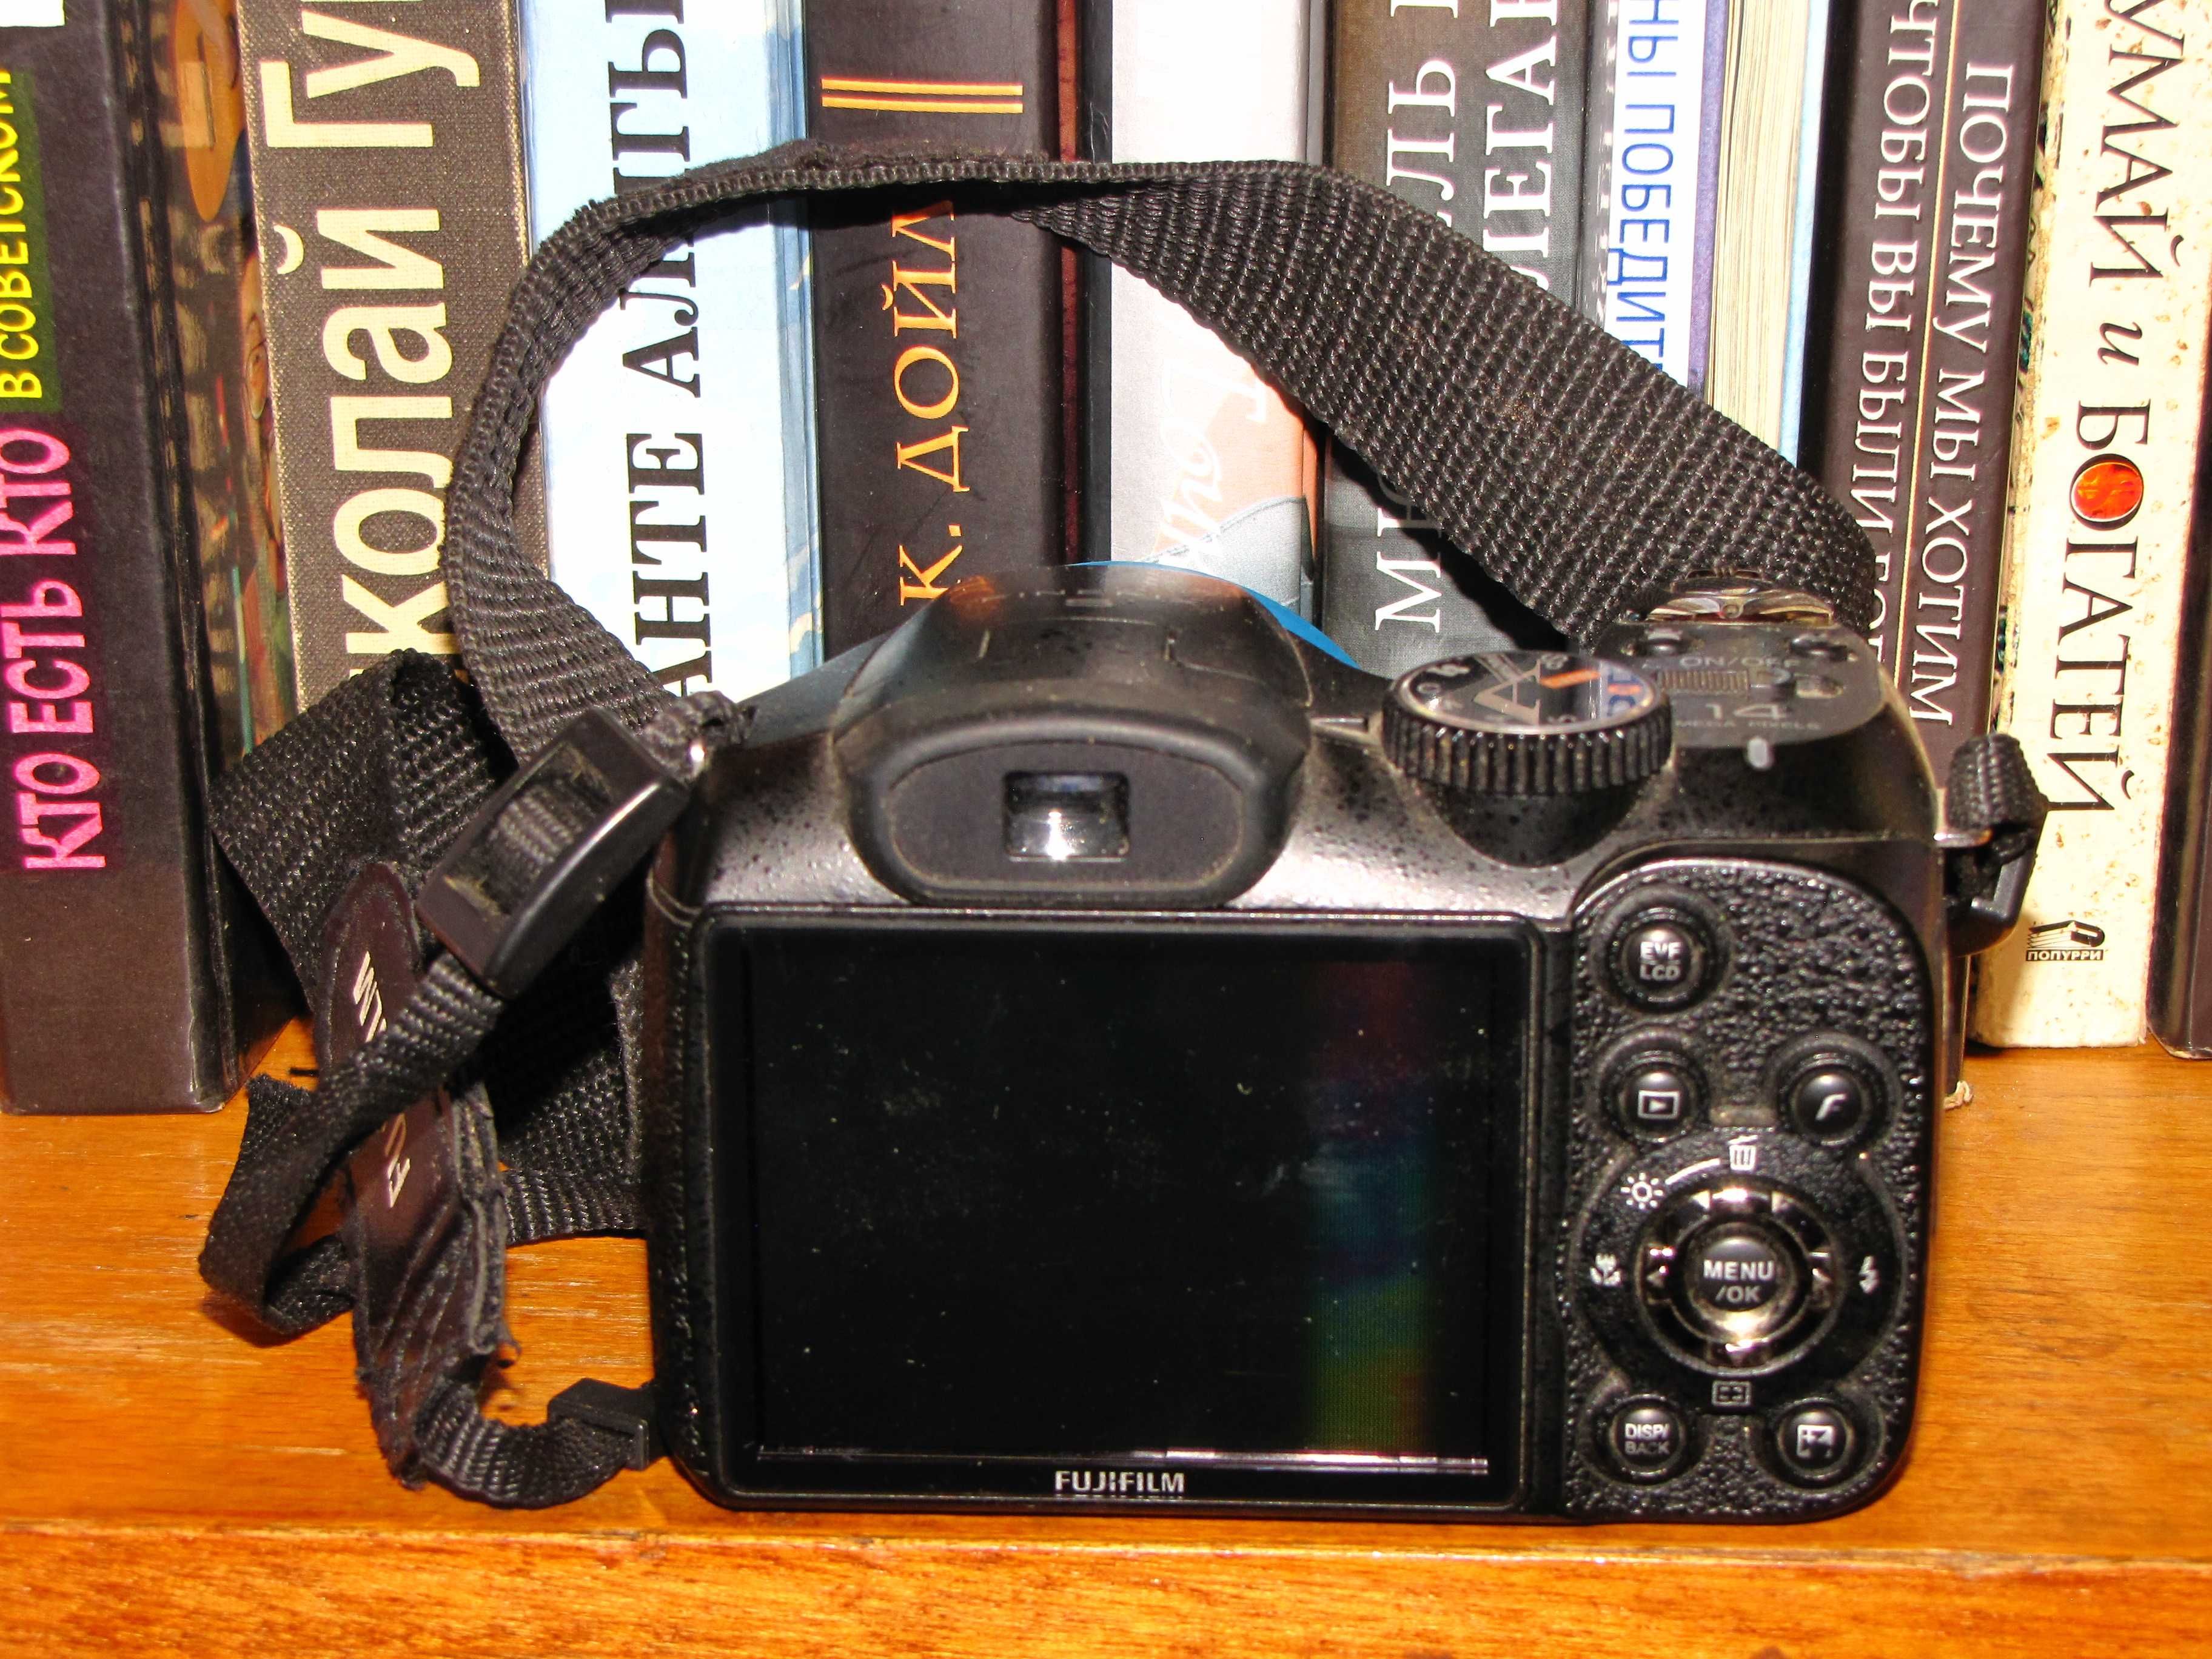 Fujifilm Finepix s2950